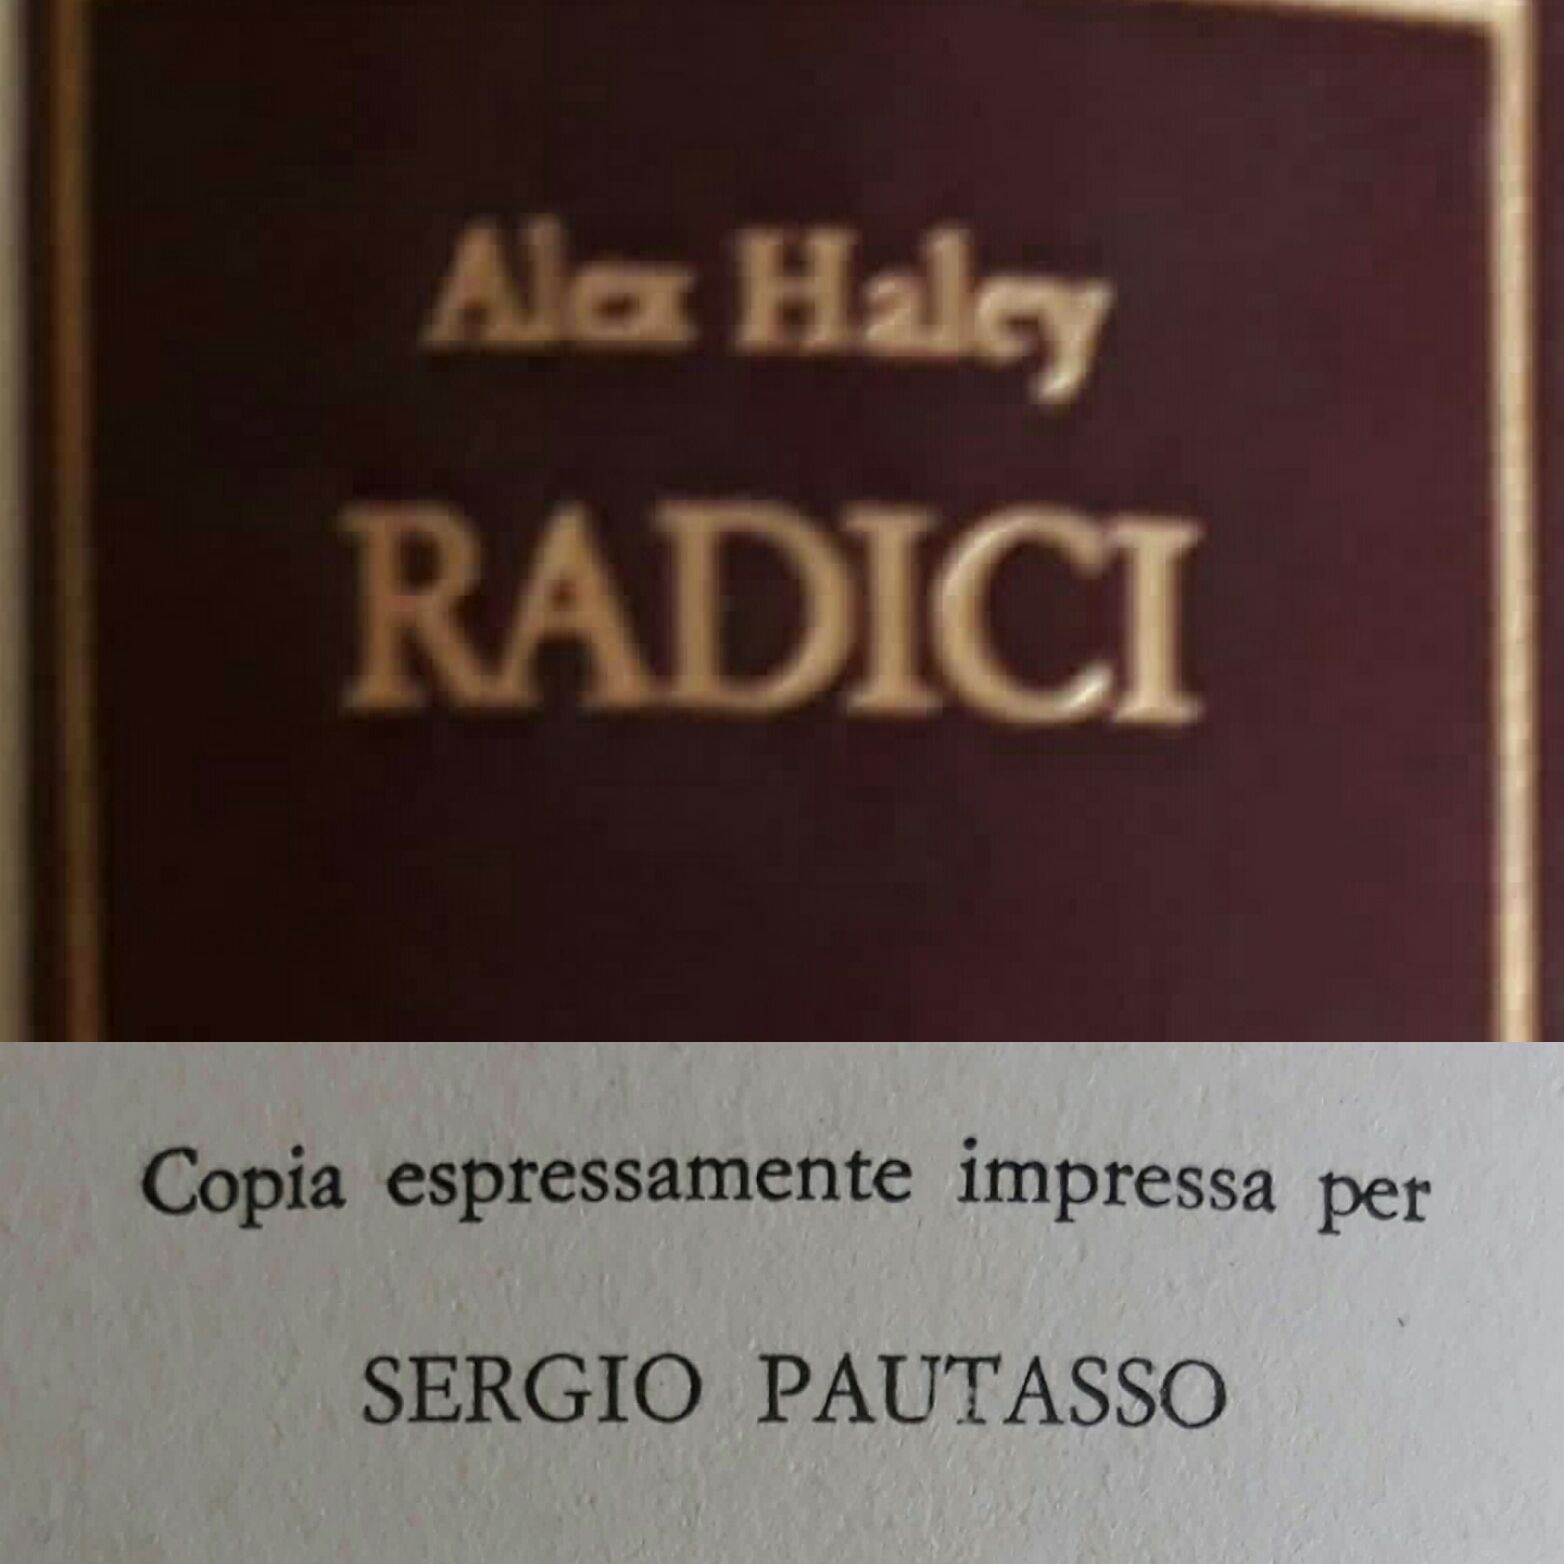 Una copia “ad personam” di “Radici” di Alex Haley per Sergio Pautasso